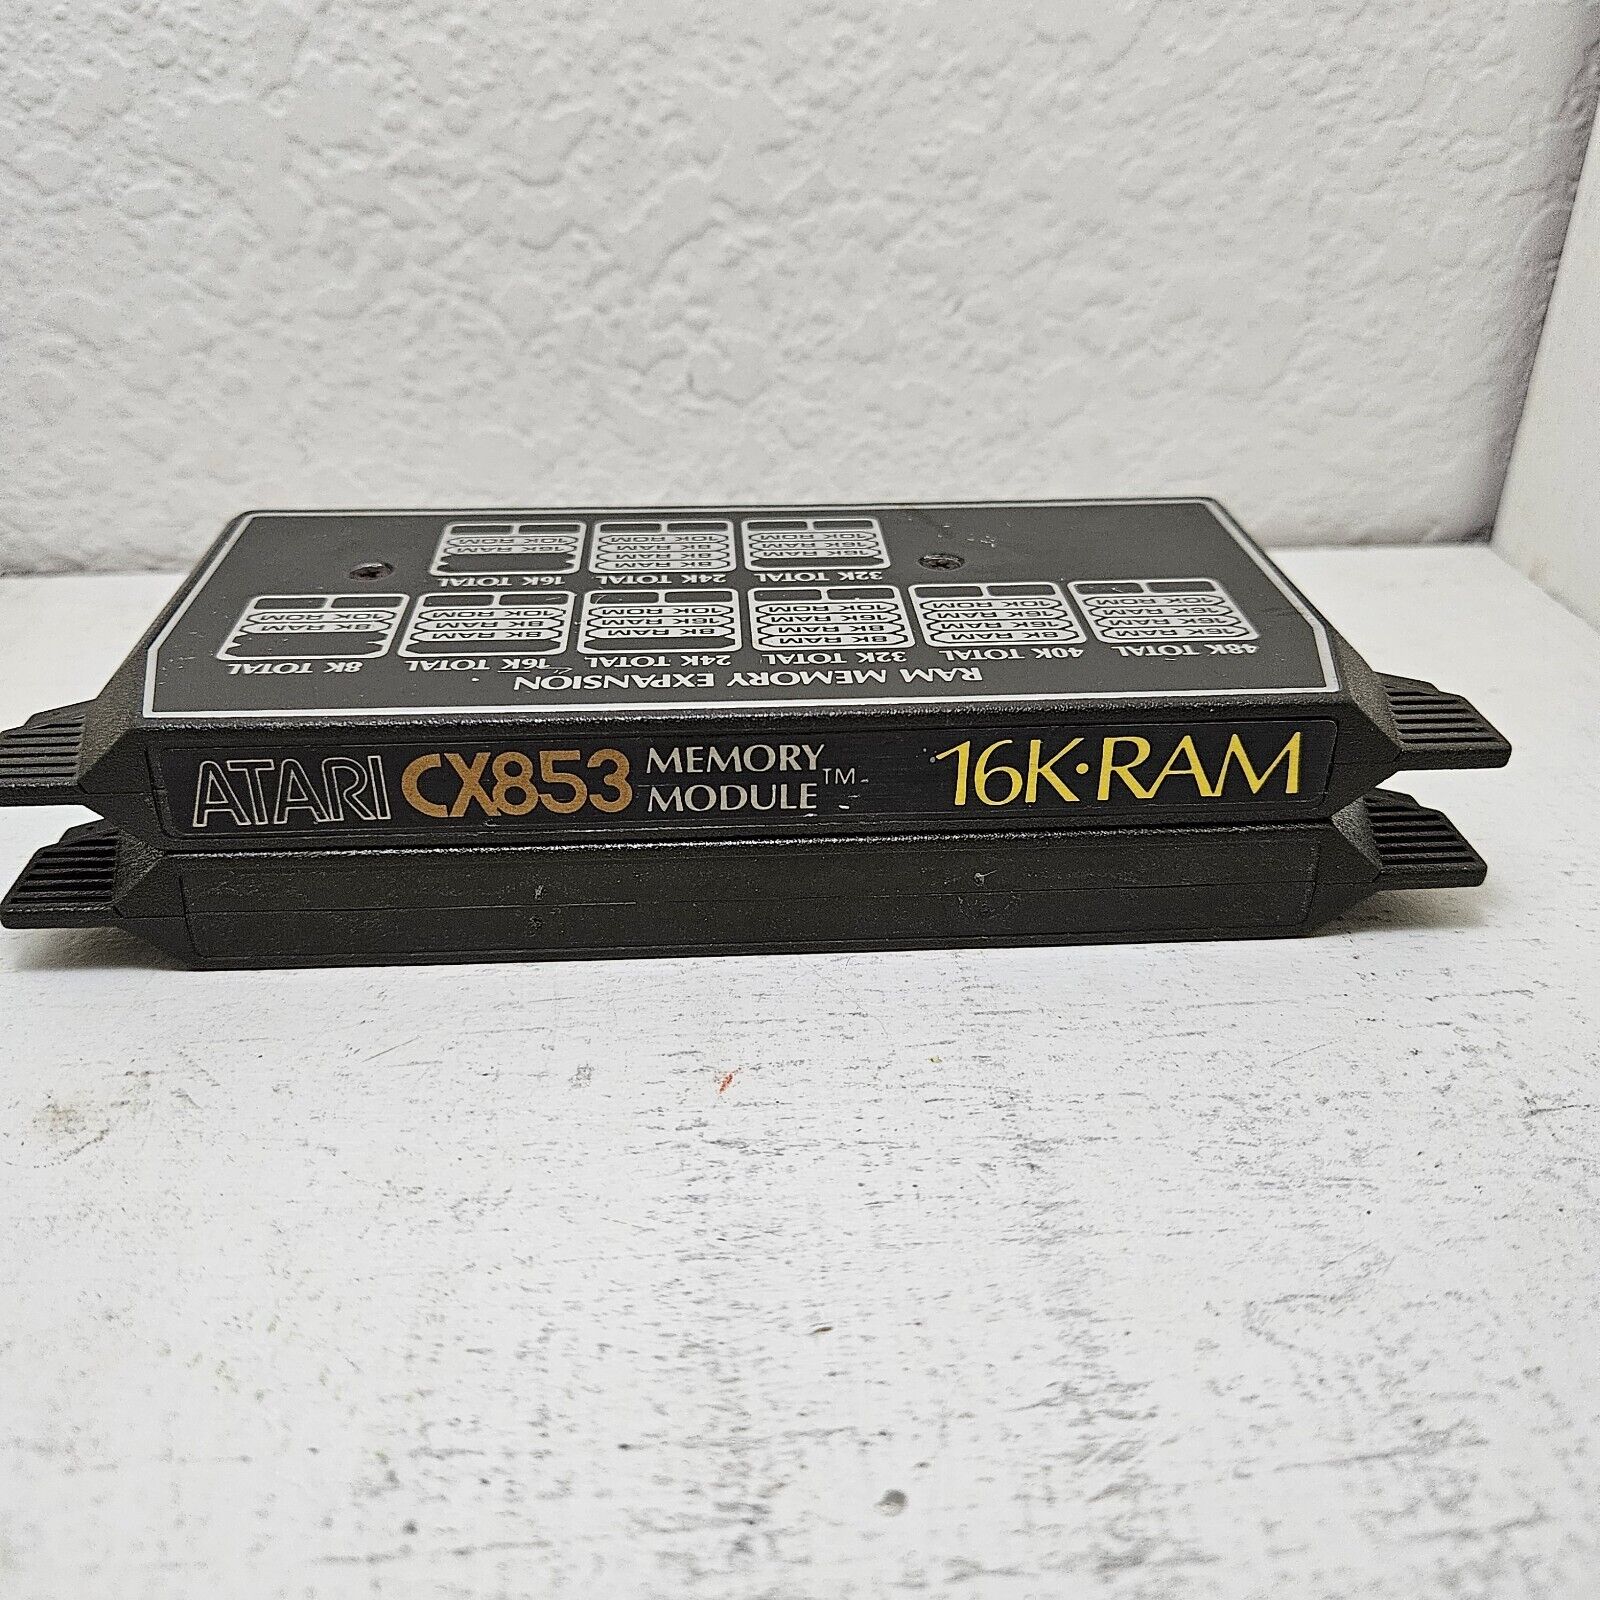 Lot of 2 Atari CX853 16K RAM Memory Module and CX801 OS 10K ROM for Atari 800